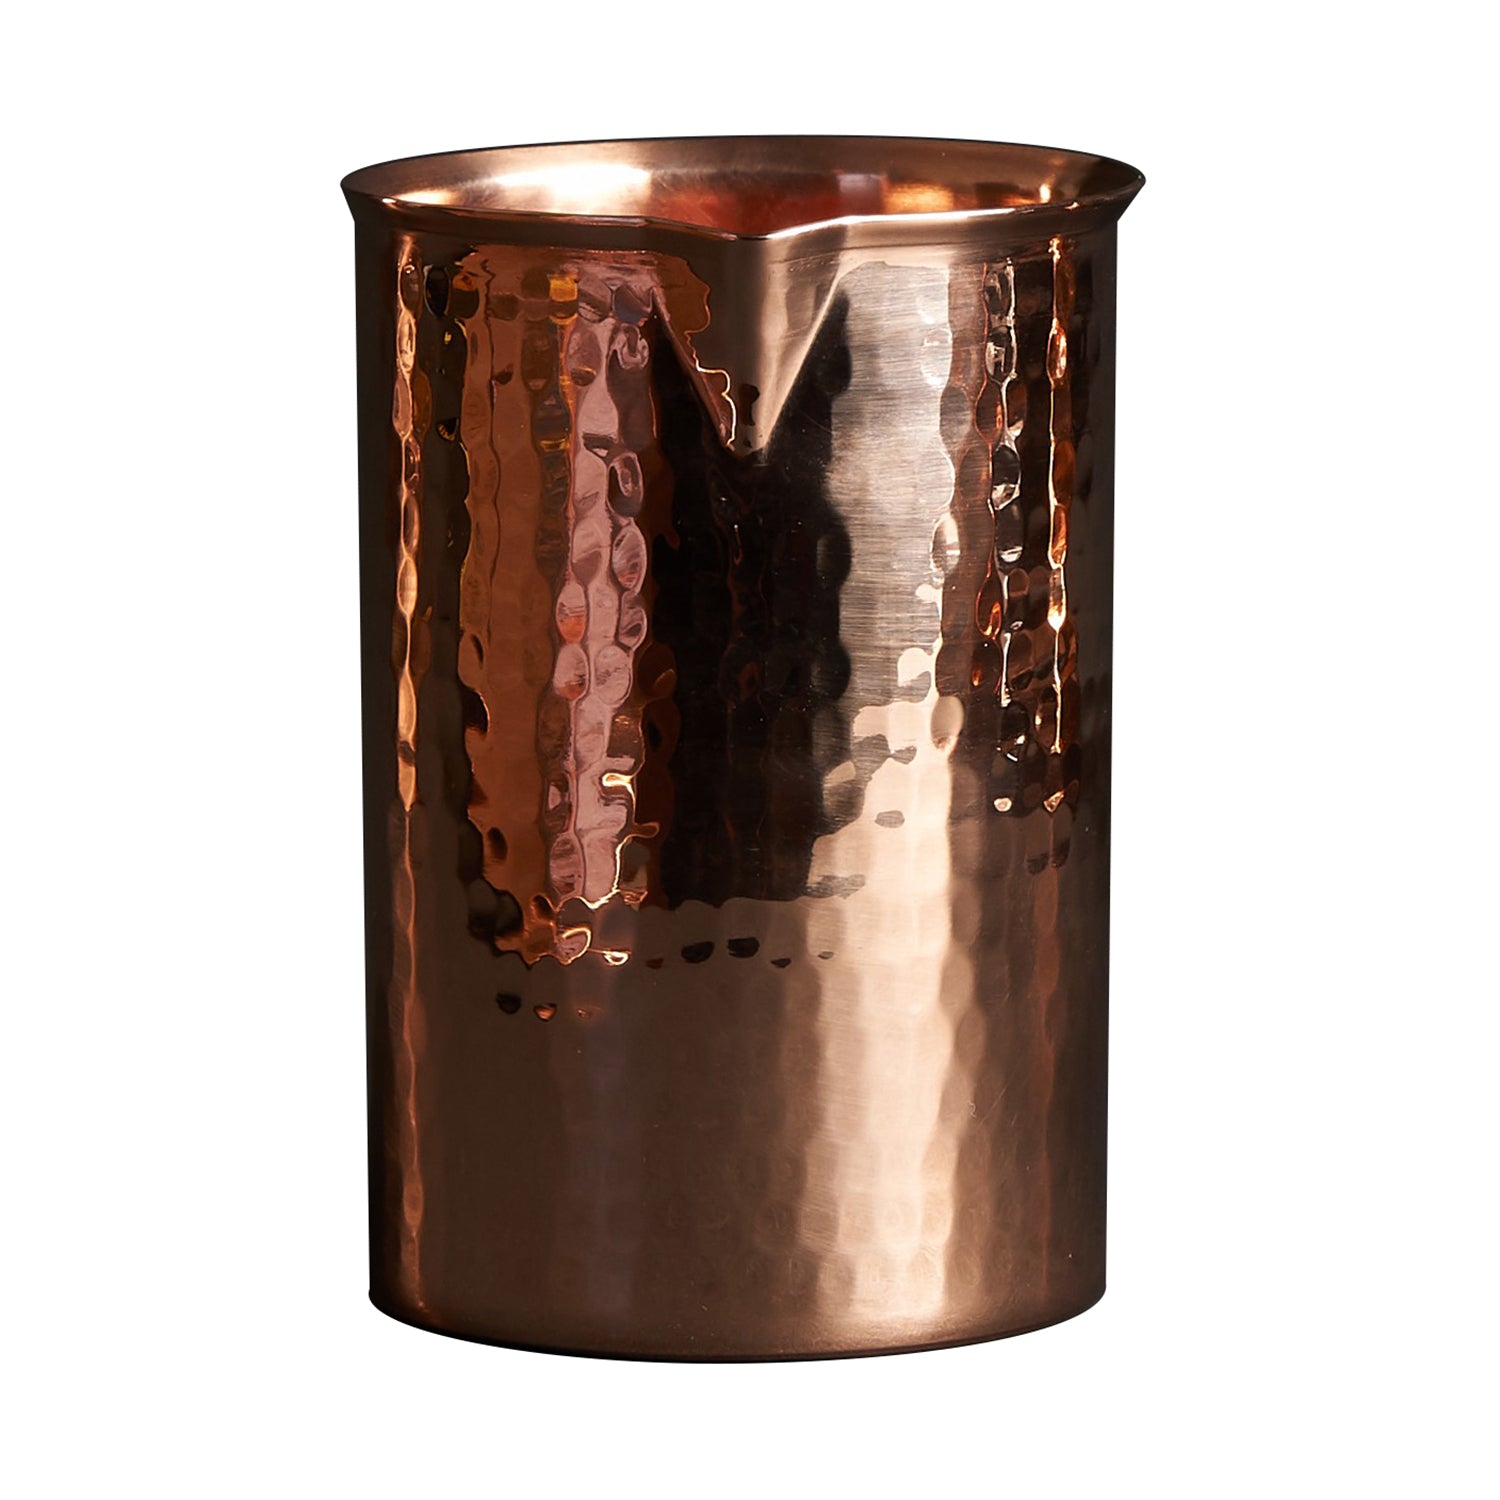 Sertodo Arcadia Beverage Urn, 13 Quart Capacity, Hammered Copper